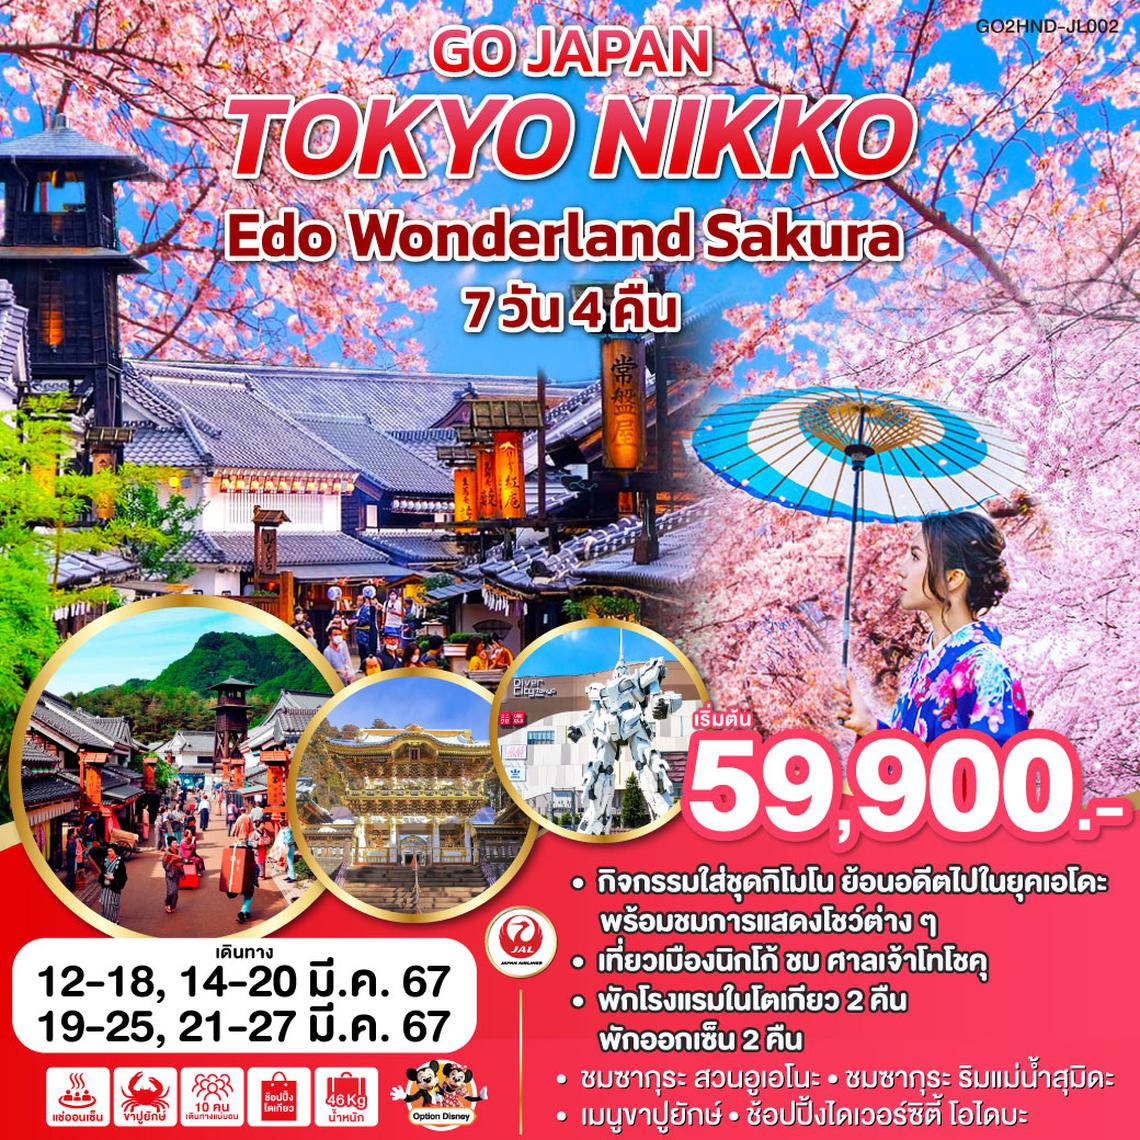 ทัวร์ญี่ปุ่น TOKYO NIKKO EDO WONDERLAND SAKURA 7 D 4 N โดยสายการบินเจแปนแอร์ไลน์ (JL)